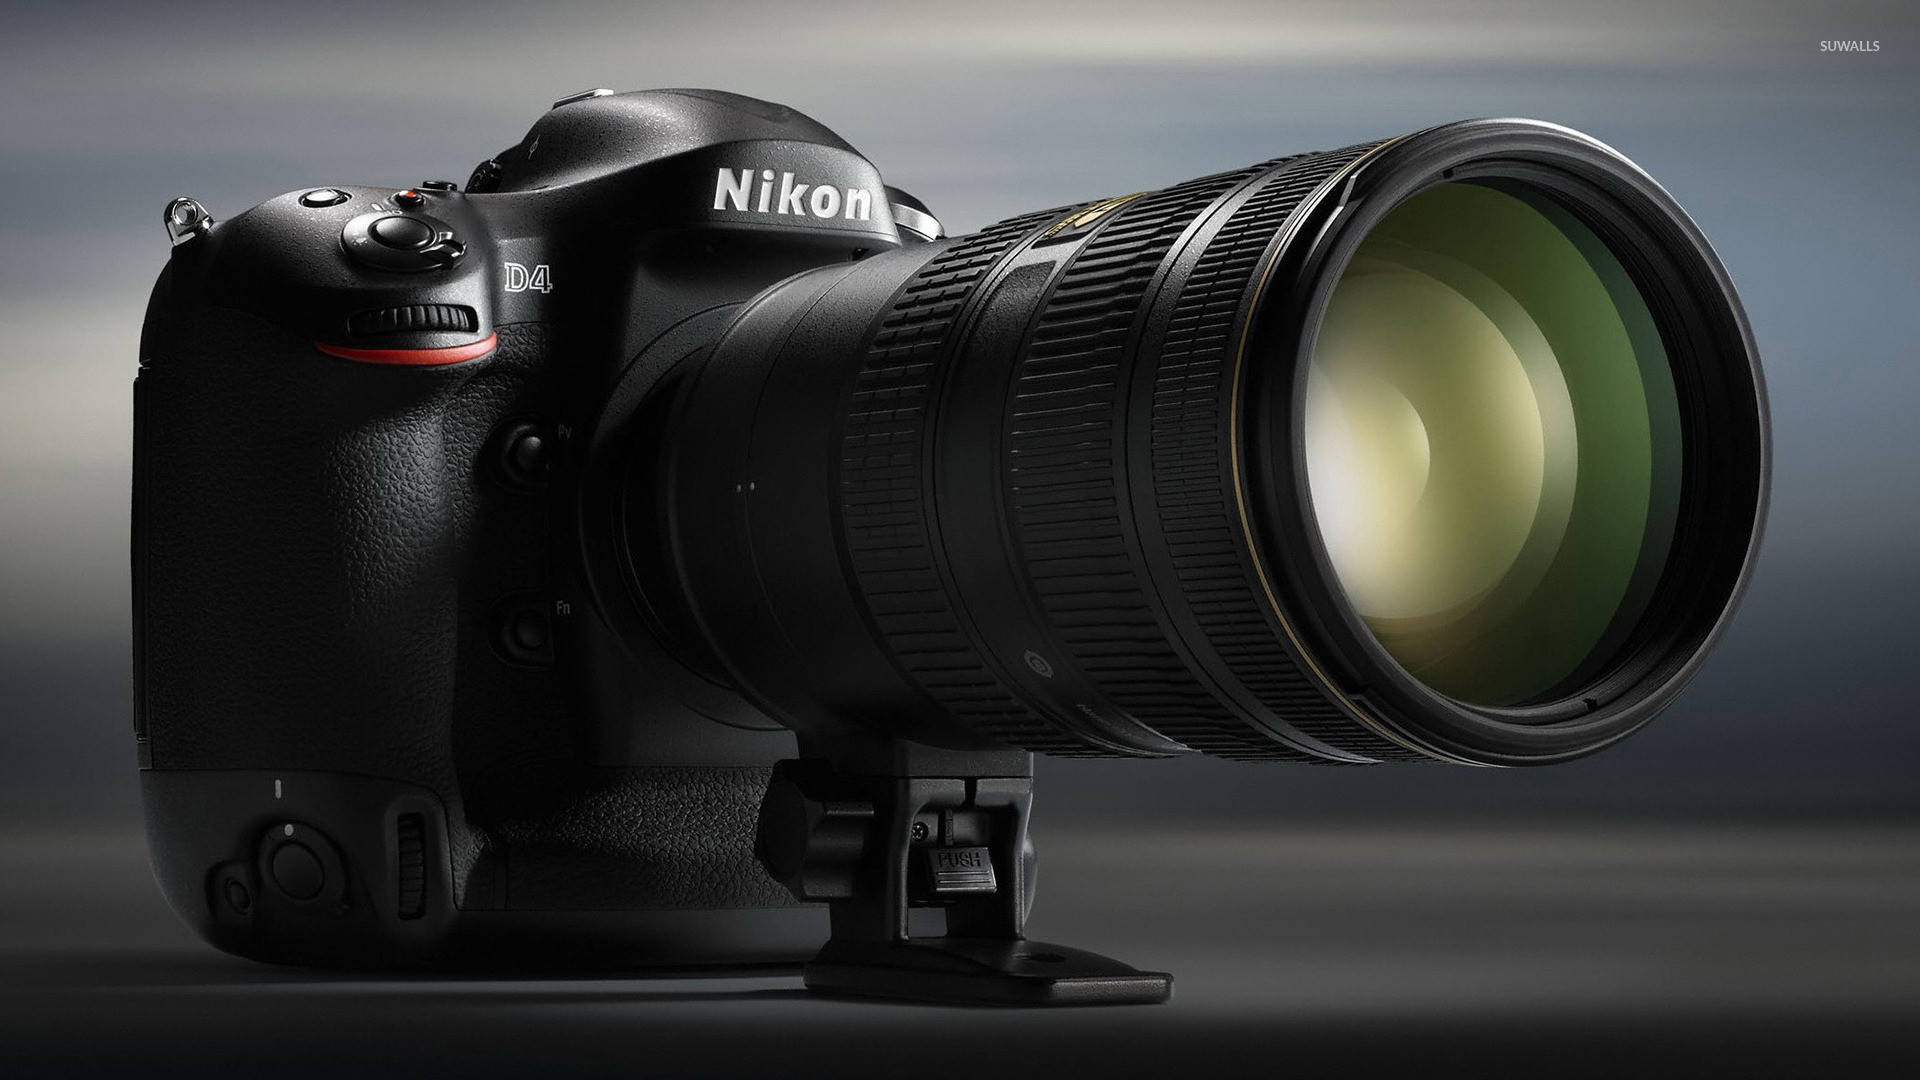 Nikon D4 Camera Wallpaper